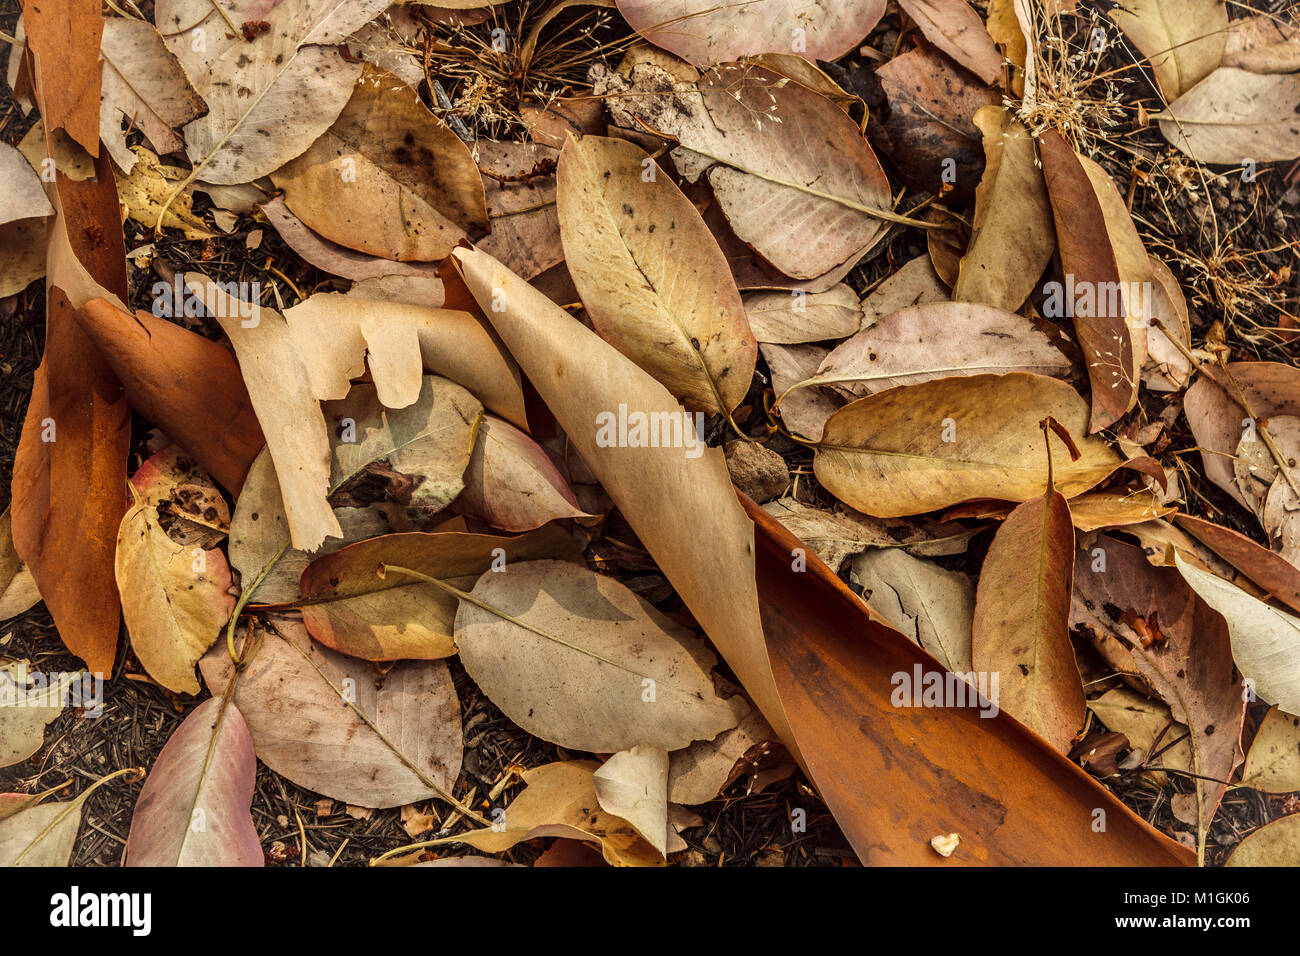 Tot, Laub und Curling Stücke von geschälten Rinde aus Erdbeerbäumen (Pacific madrone) den Boden mit Tönen von rötlich braun und Gold. Stockfoto